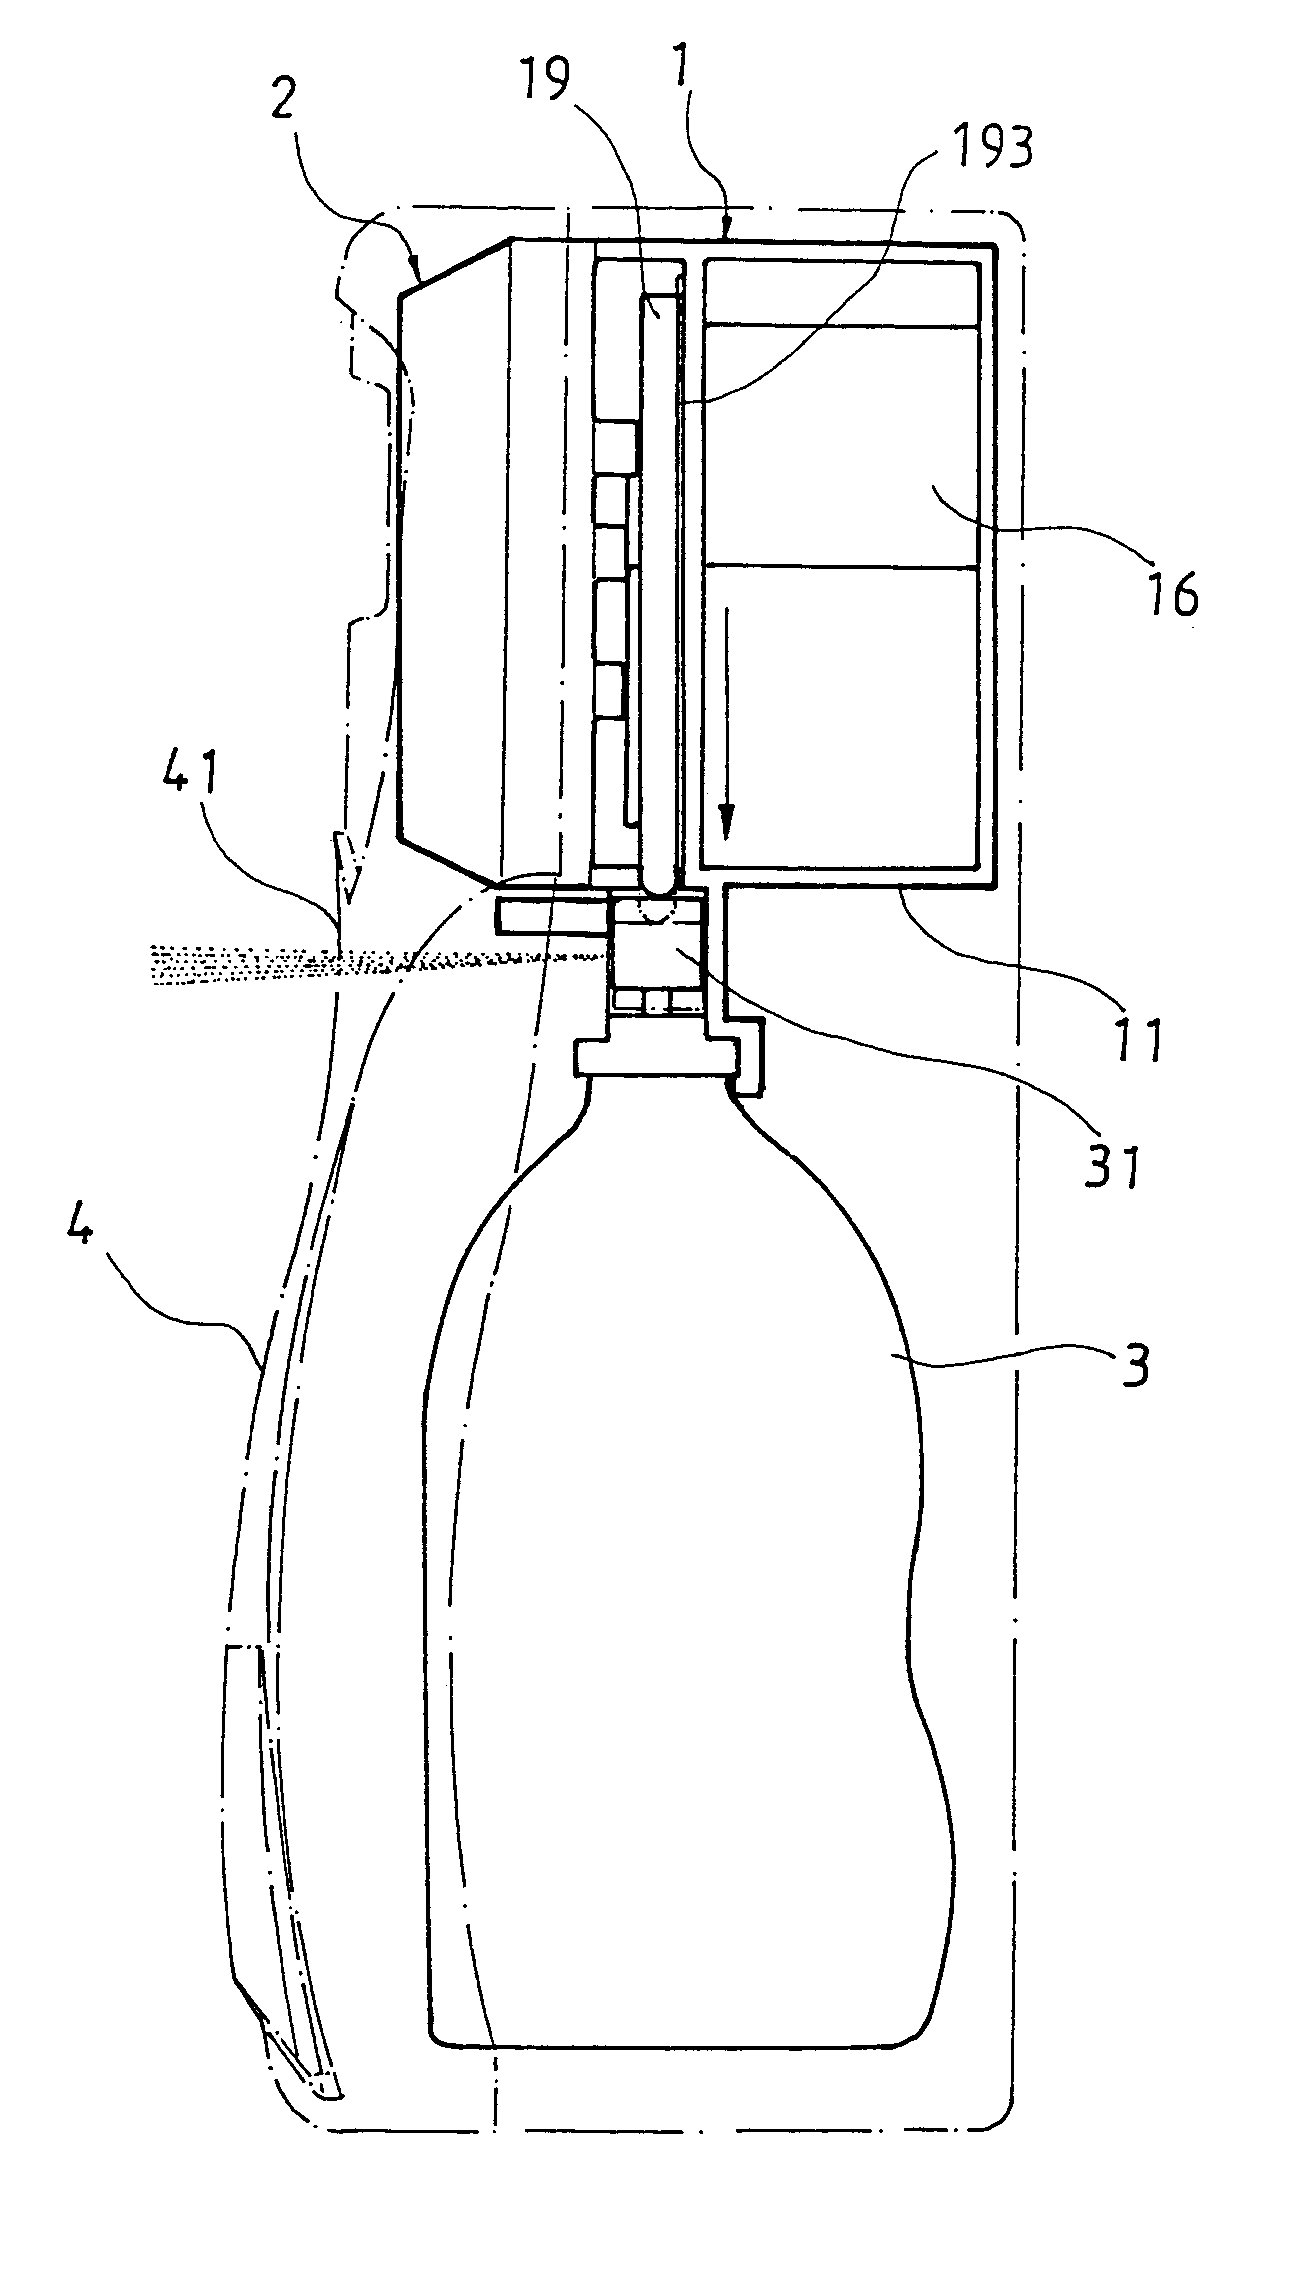 Driving mechanism for fragrance dispenser